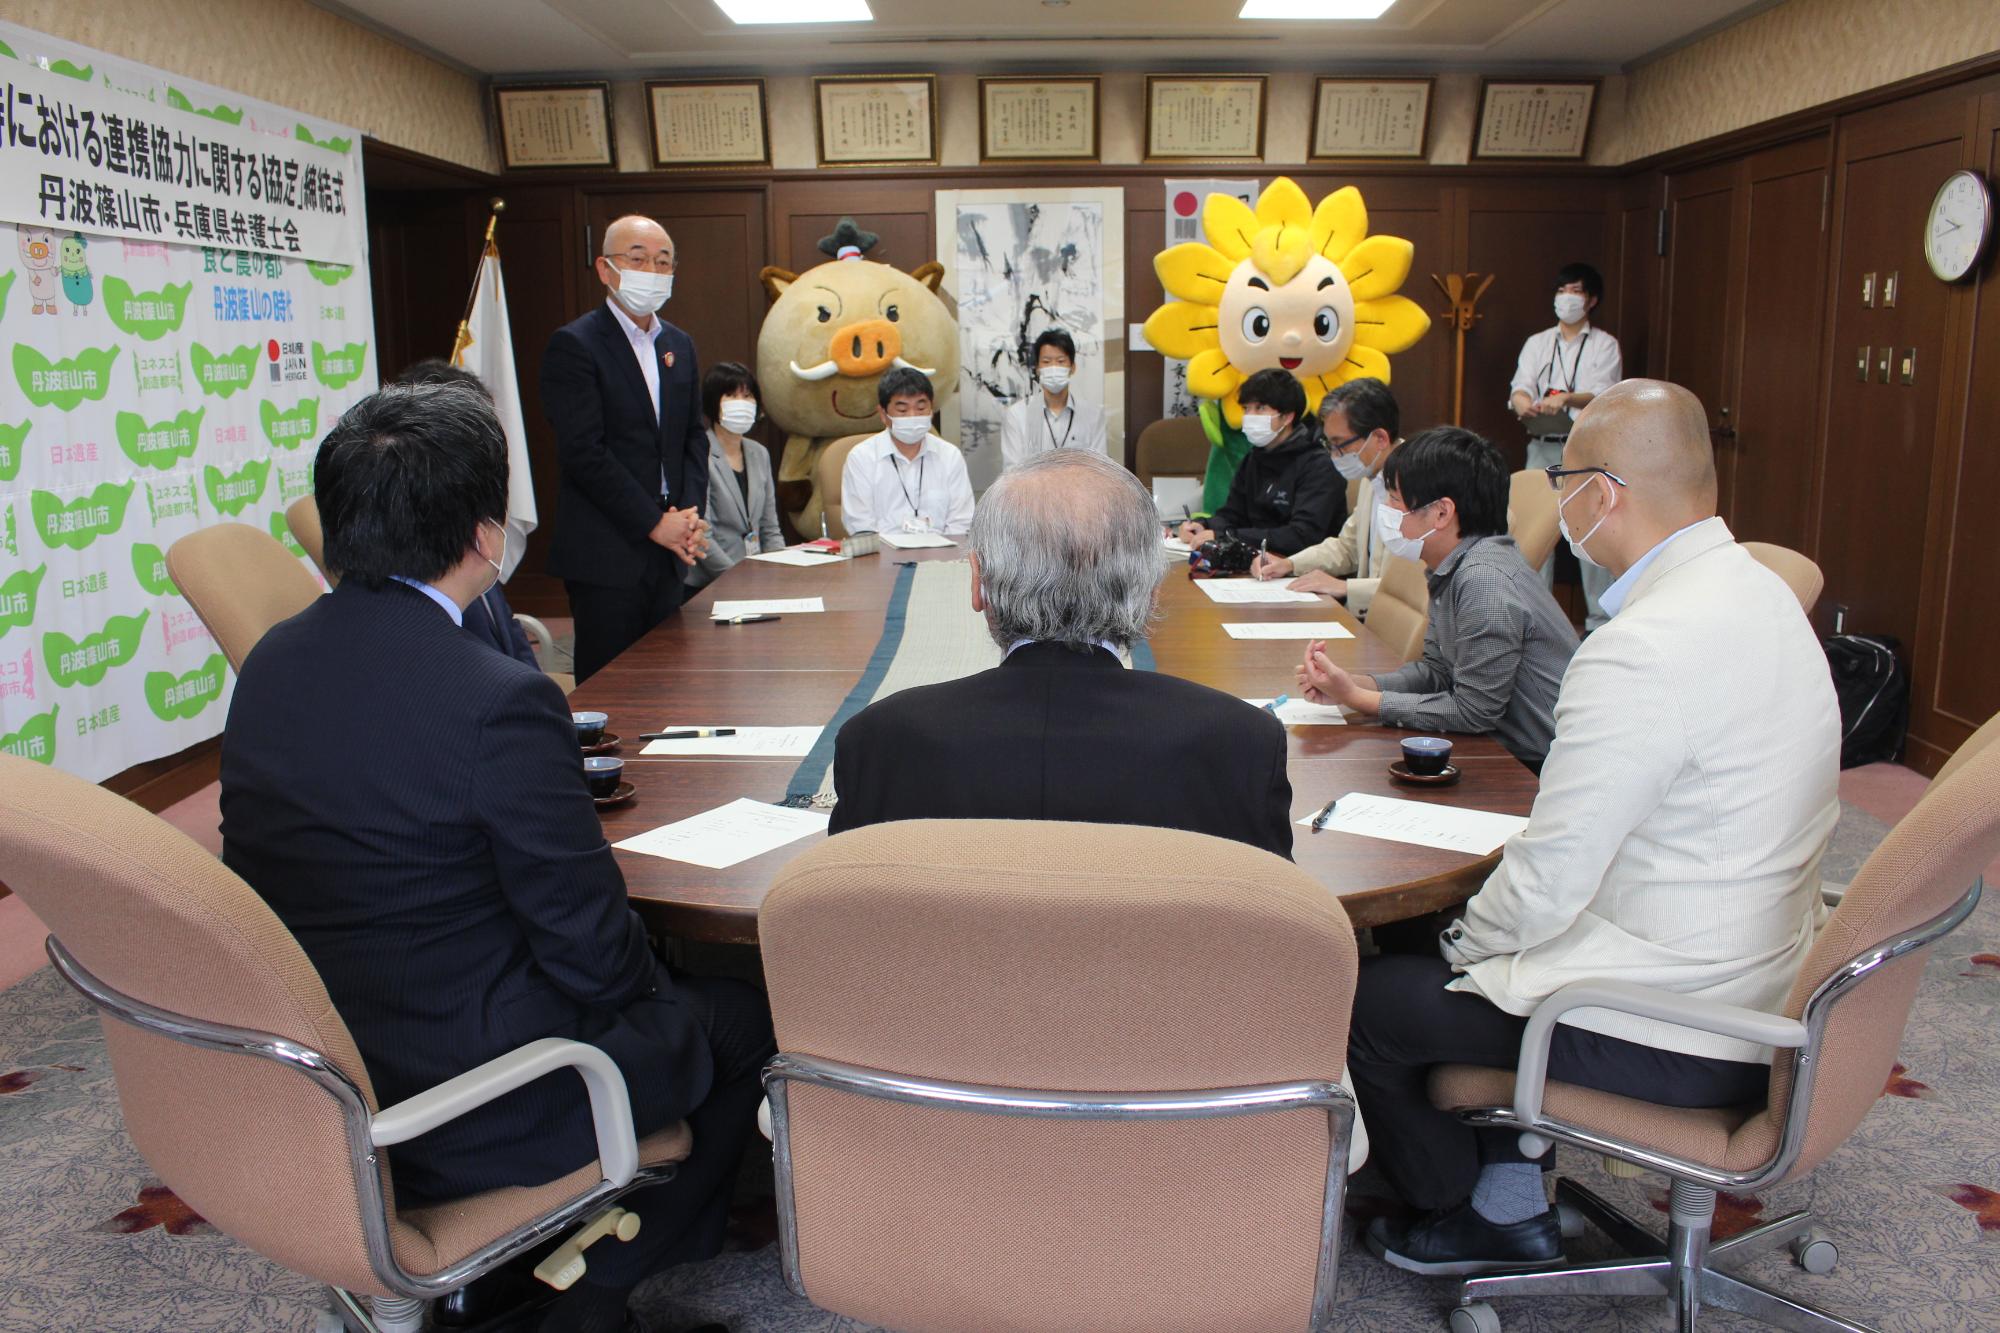 応接室で市長が立って説明をされている。奥にはマスコットキャラクターが並んで立っている。